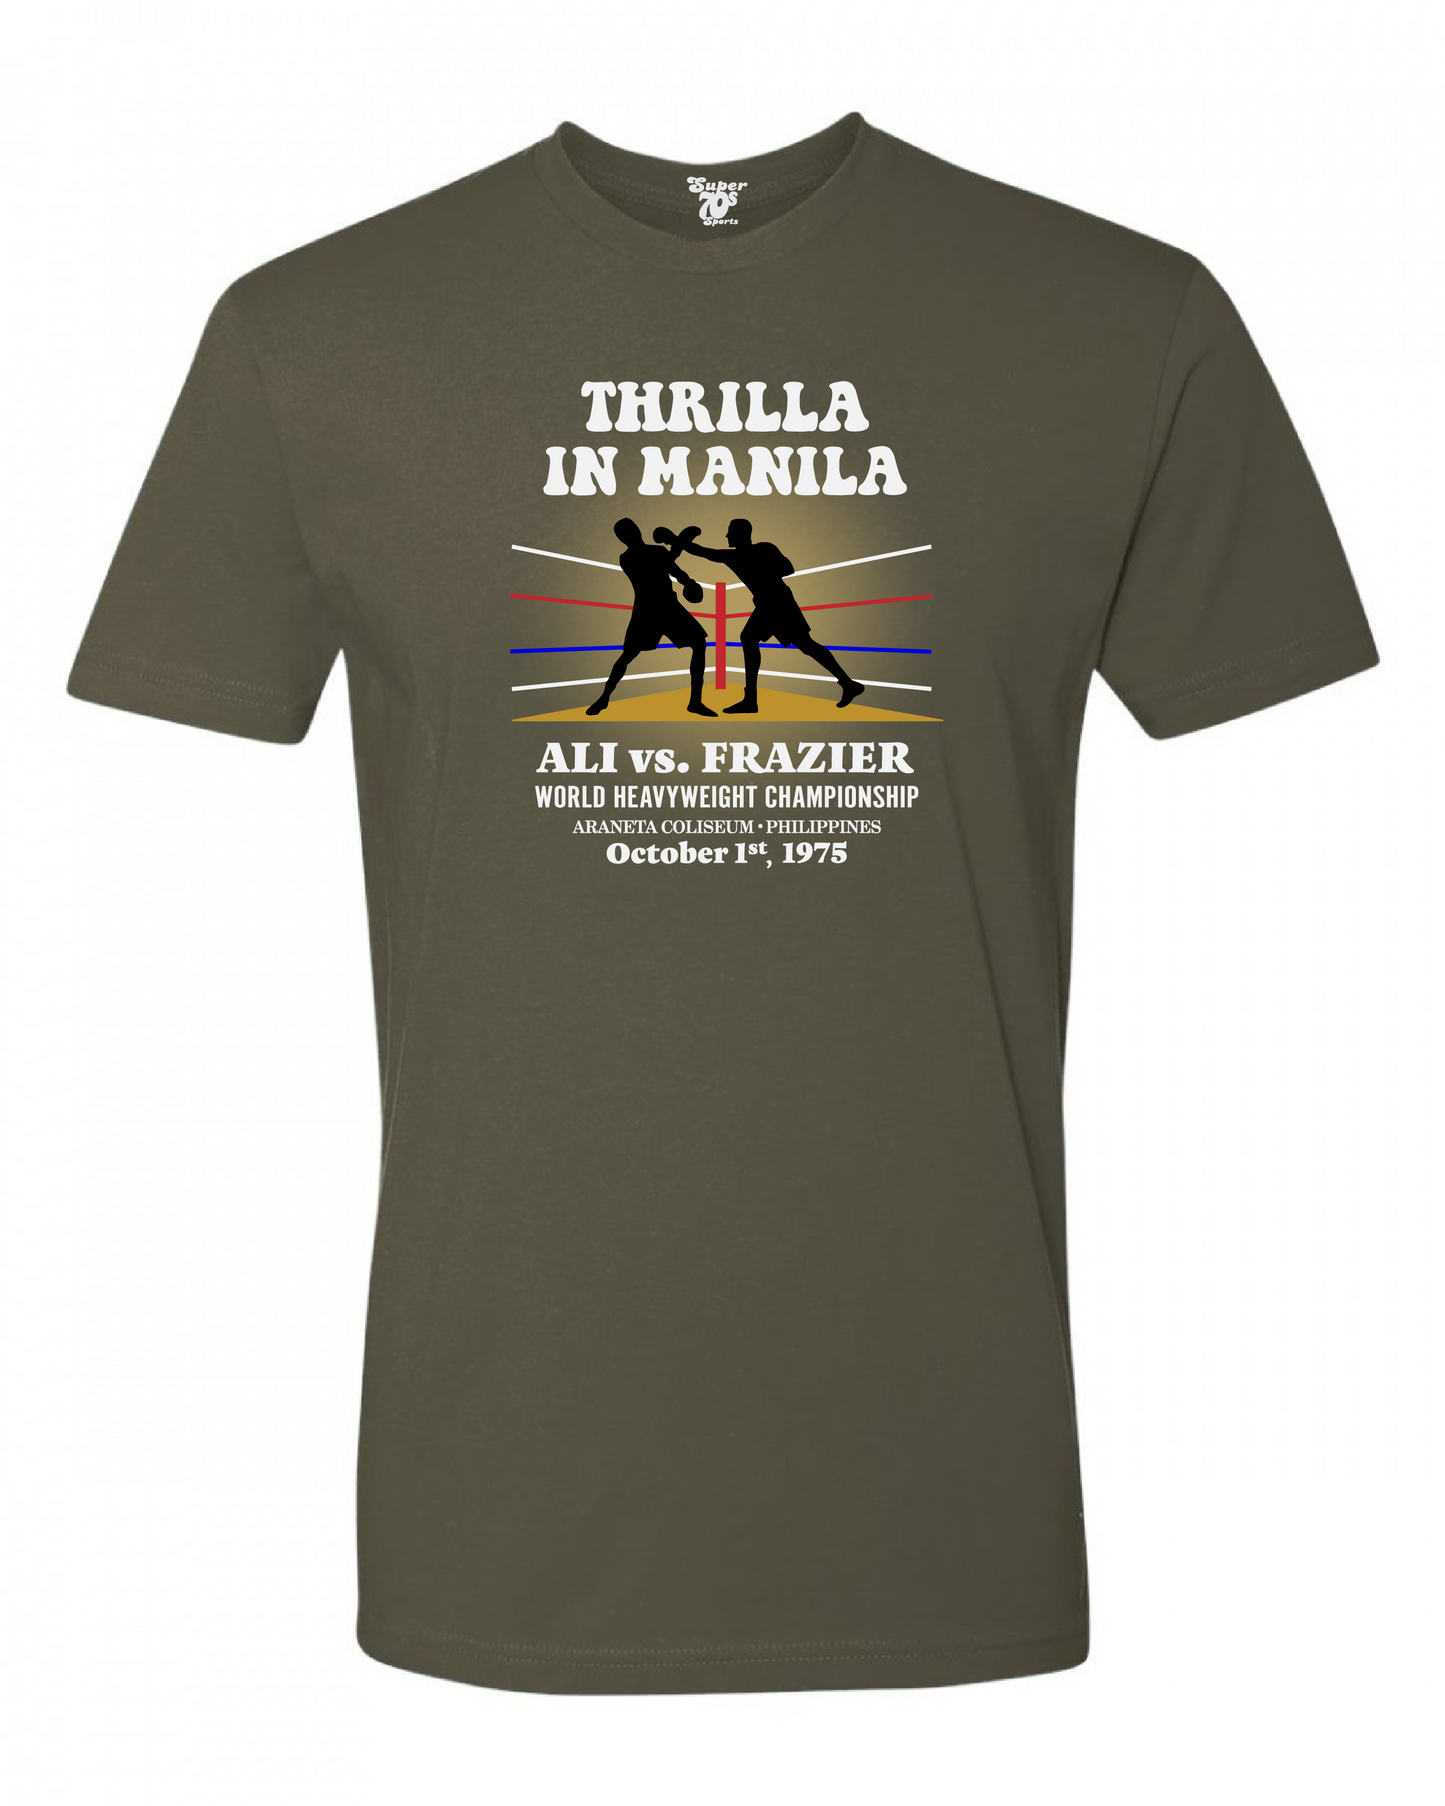 Thrilla in Manila Tee